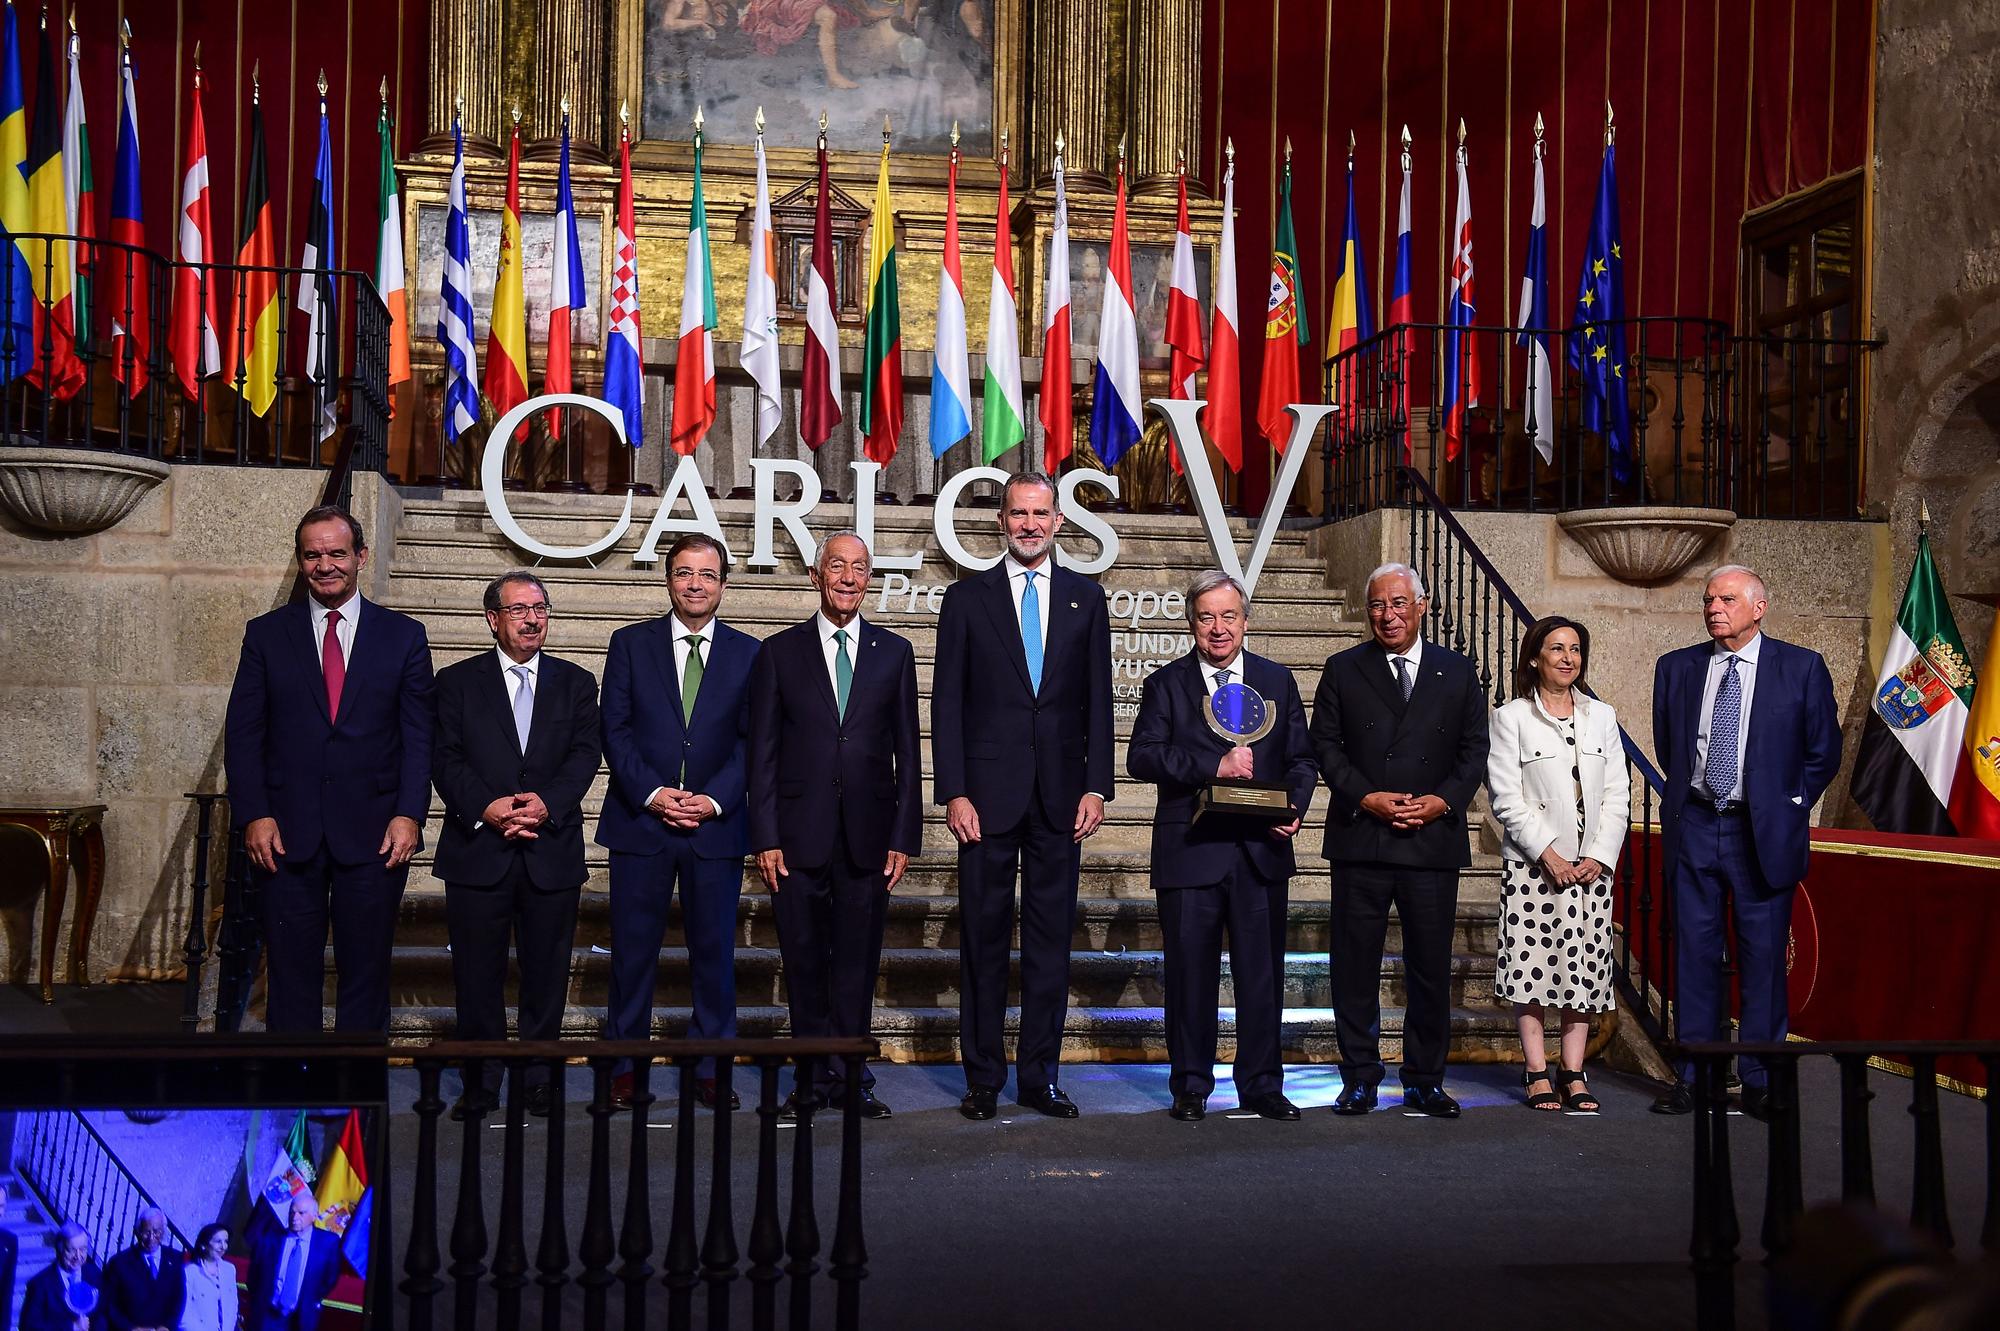 GALERÍA | Las imágenes de la entrega de la décimo sexta edición del Premio Europeo Carlos V